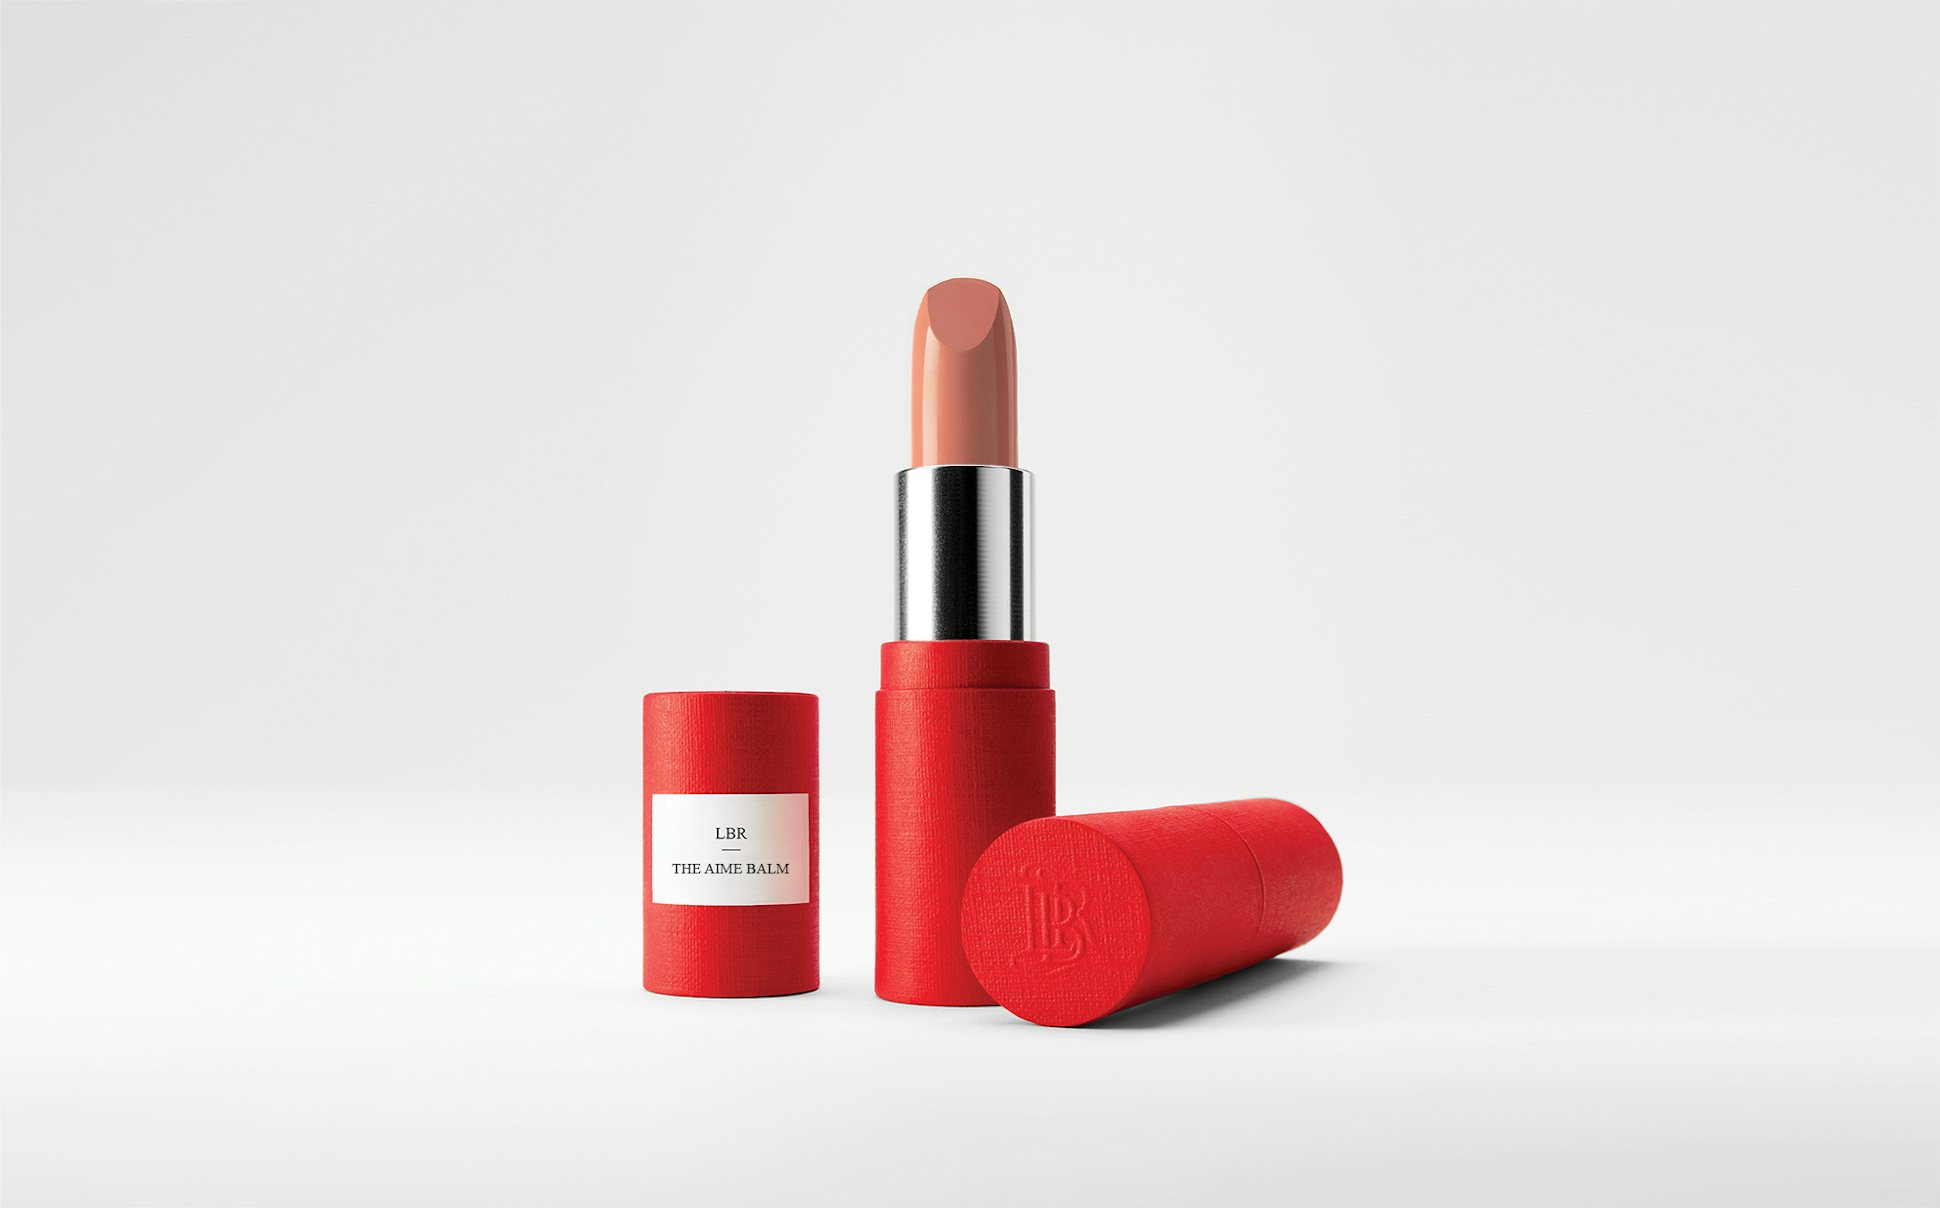 La bouche rouge The Aime balm lipstick in the red paper case